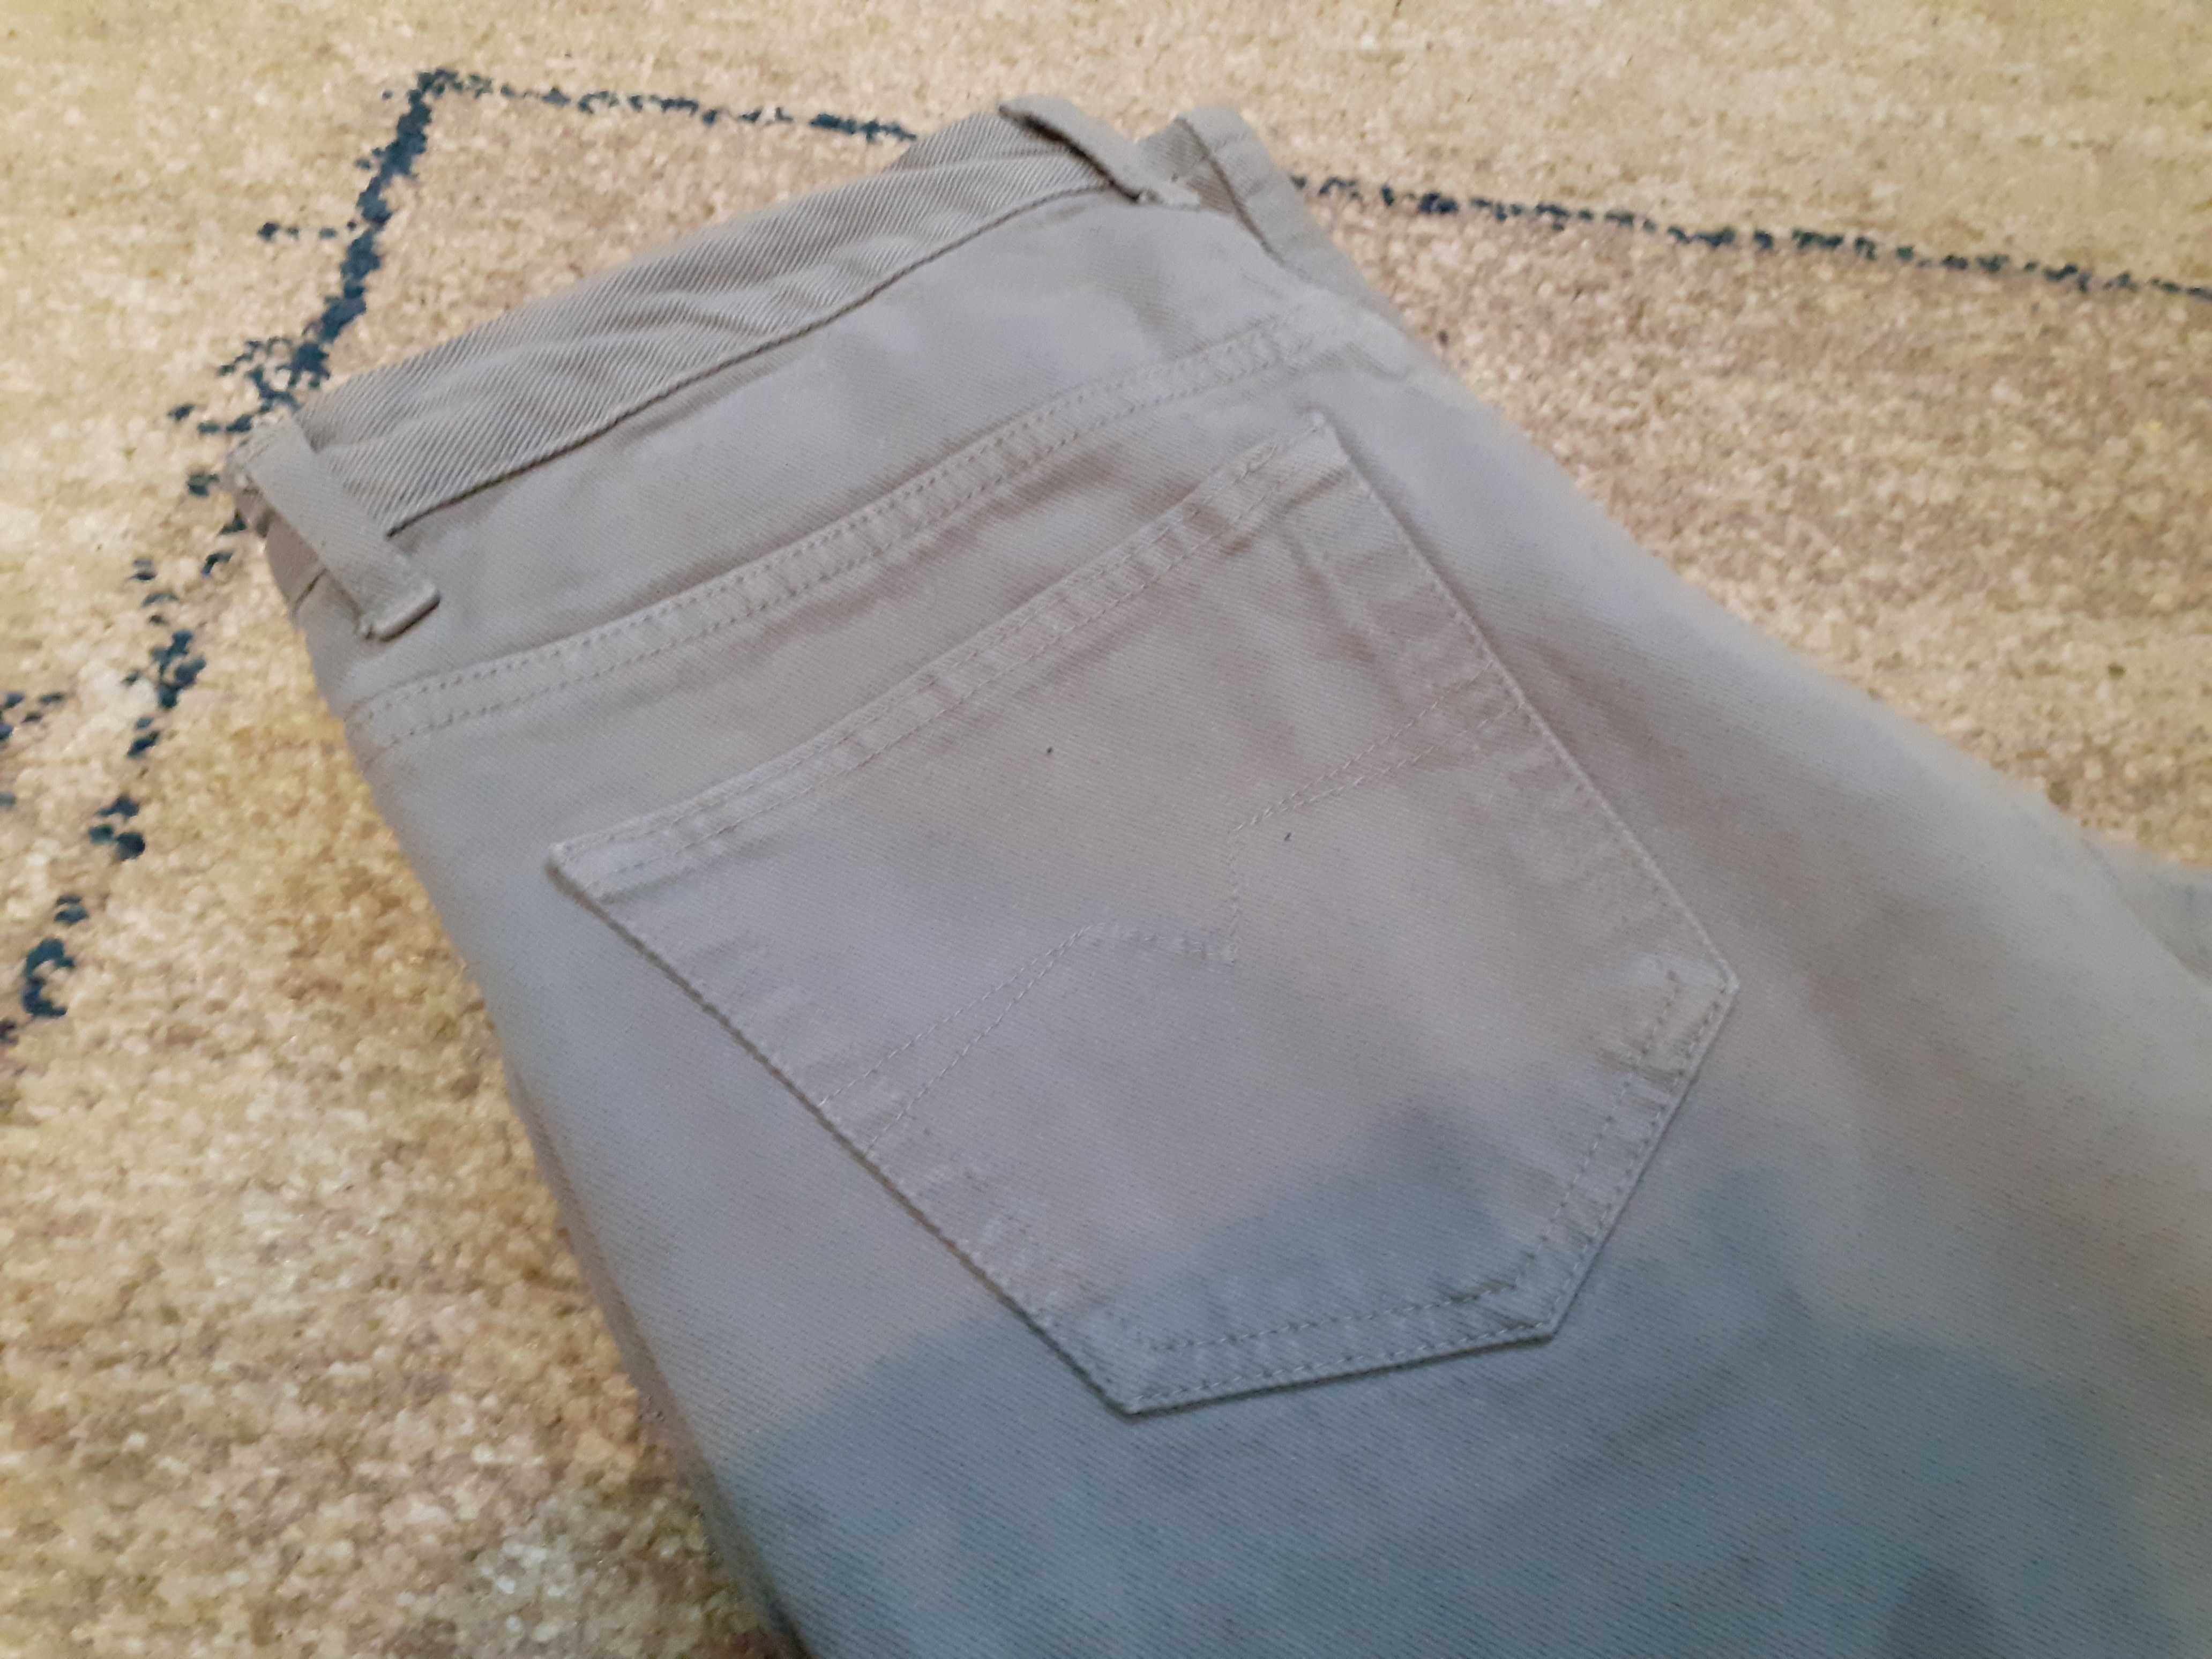 NOWE spodnie jensowe męskie (ROZMIAR 32) (SZARE)